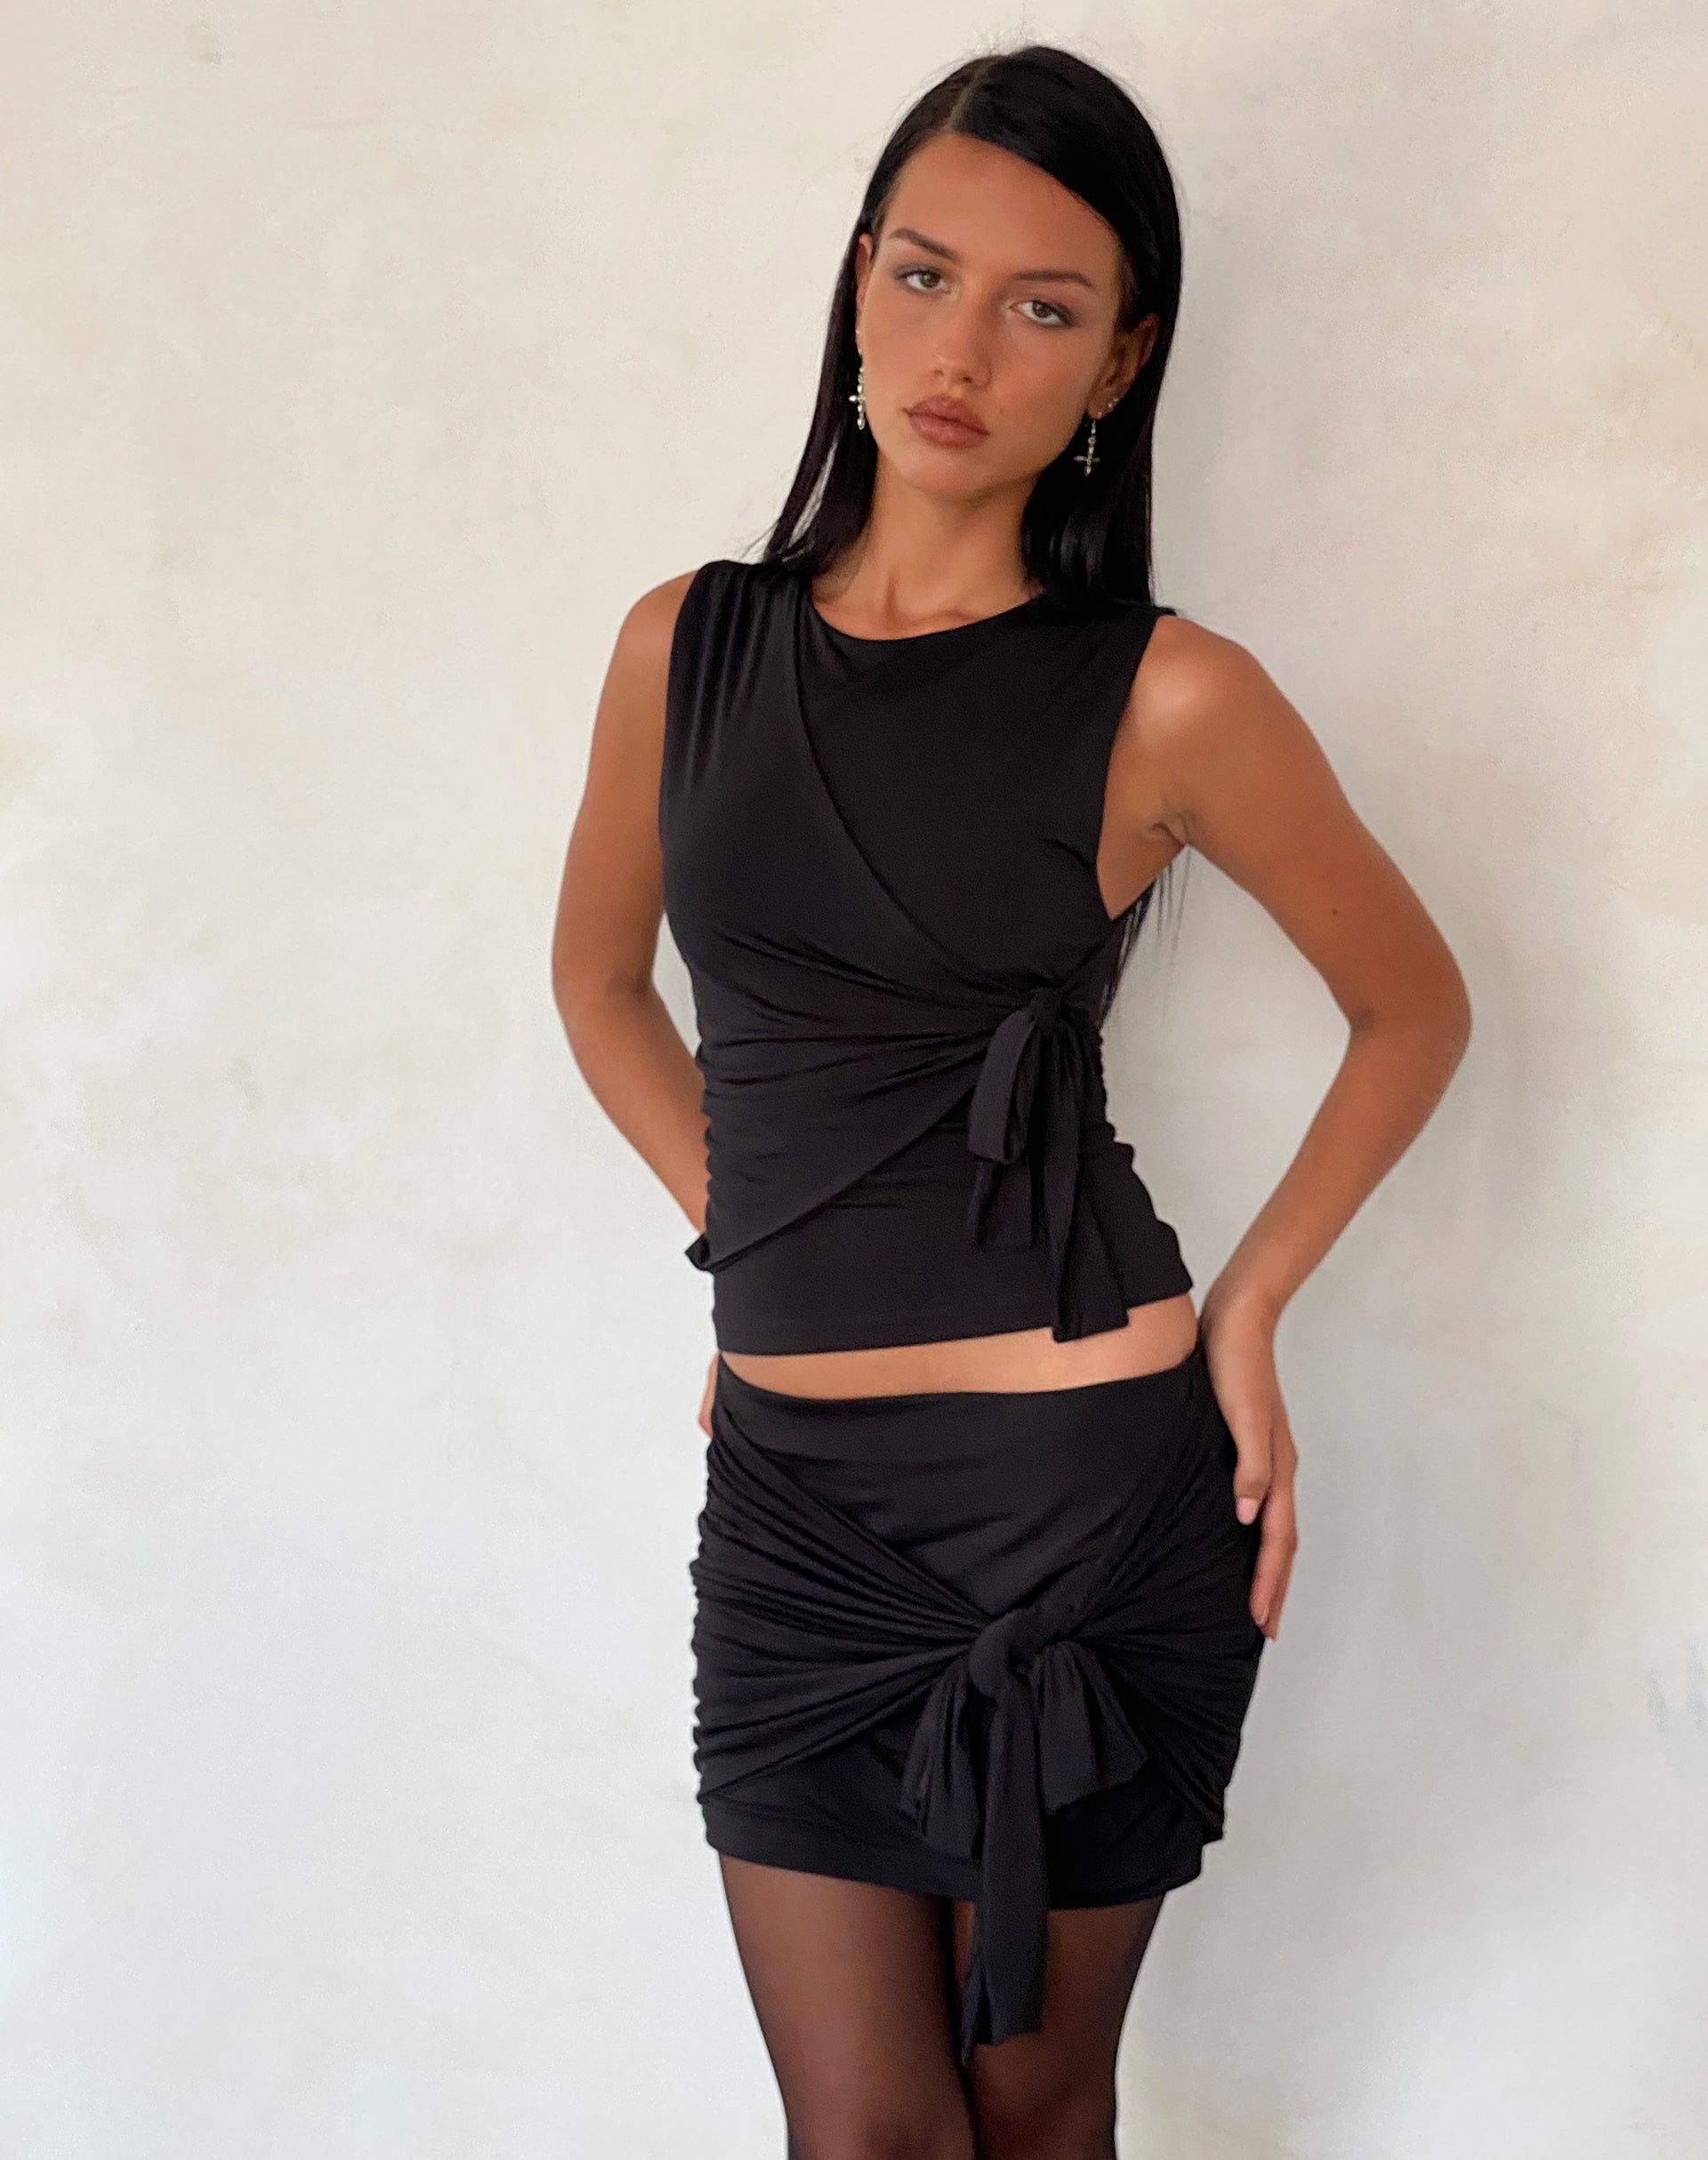 Image of Kass Bow Detail Mini Skirt in Slinky Black